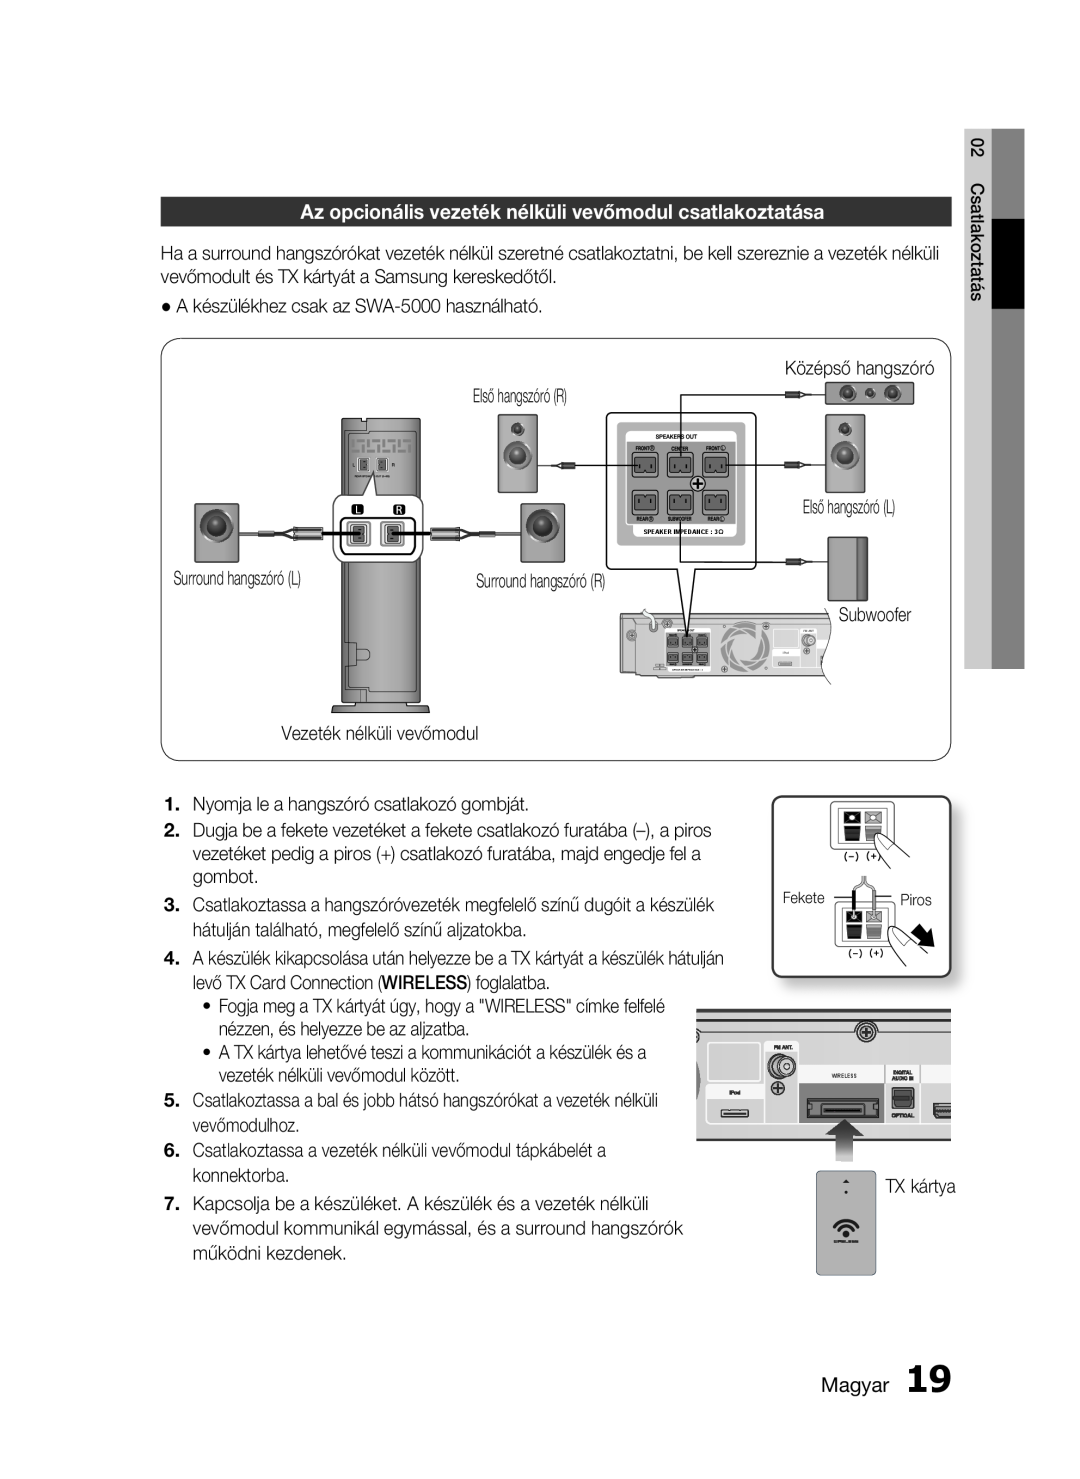 Samsung HT-C5900/XEE, HT-C5900/XEF manual Az opcionális vezeték nélküli vevőmodul csatlakoztatása, Magyar, Piros 